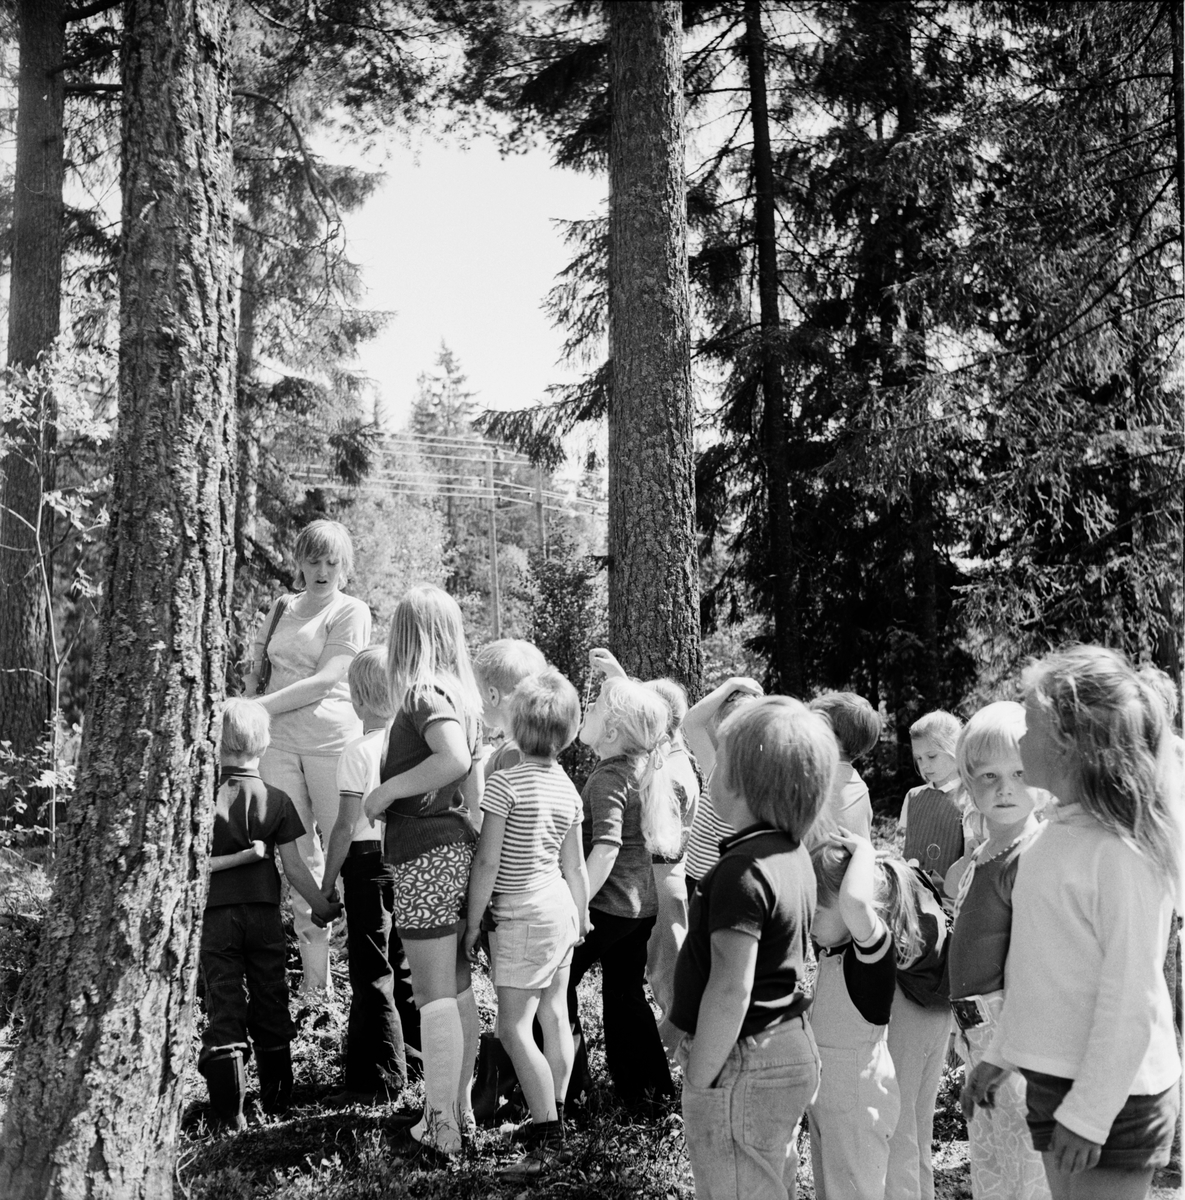 Arbrå,
Skogsmulle-skolan i Arbrå avslutas,
Juni 1972